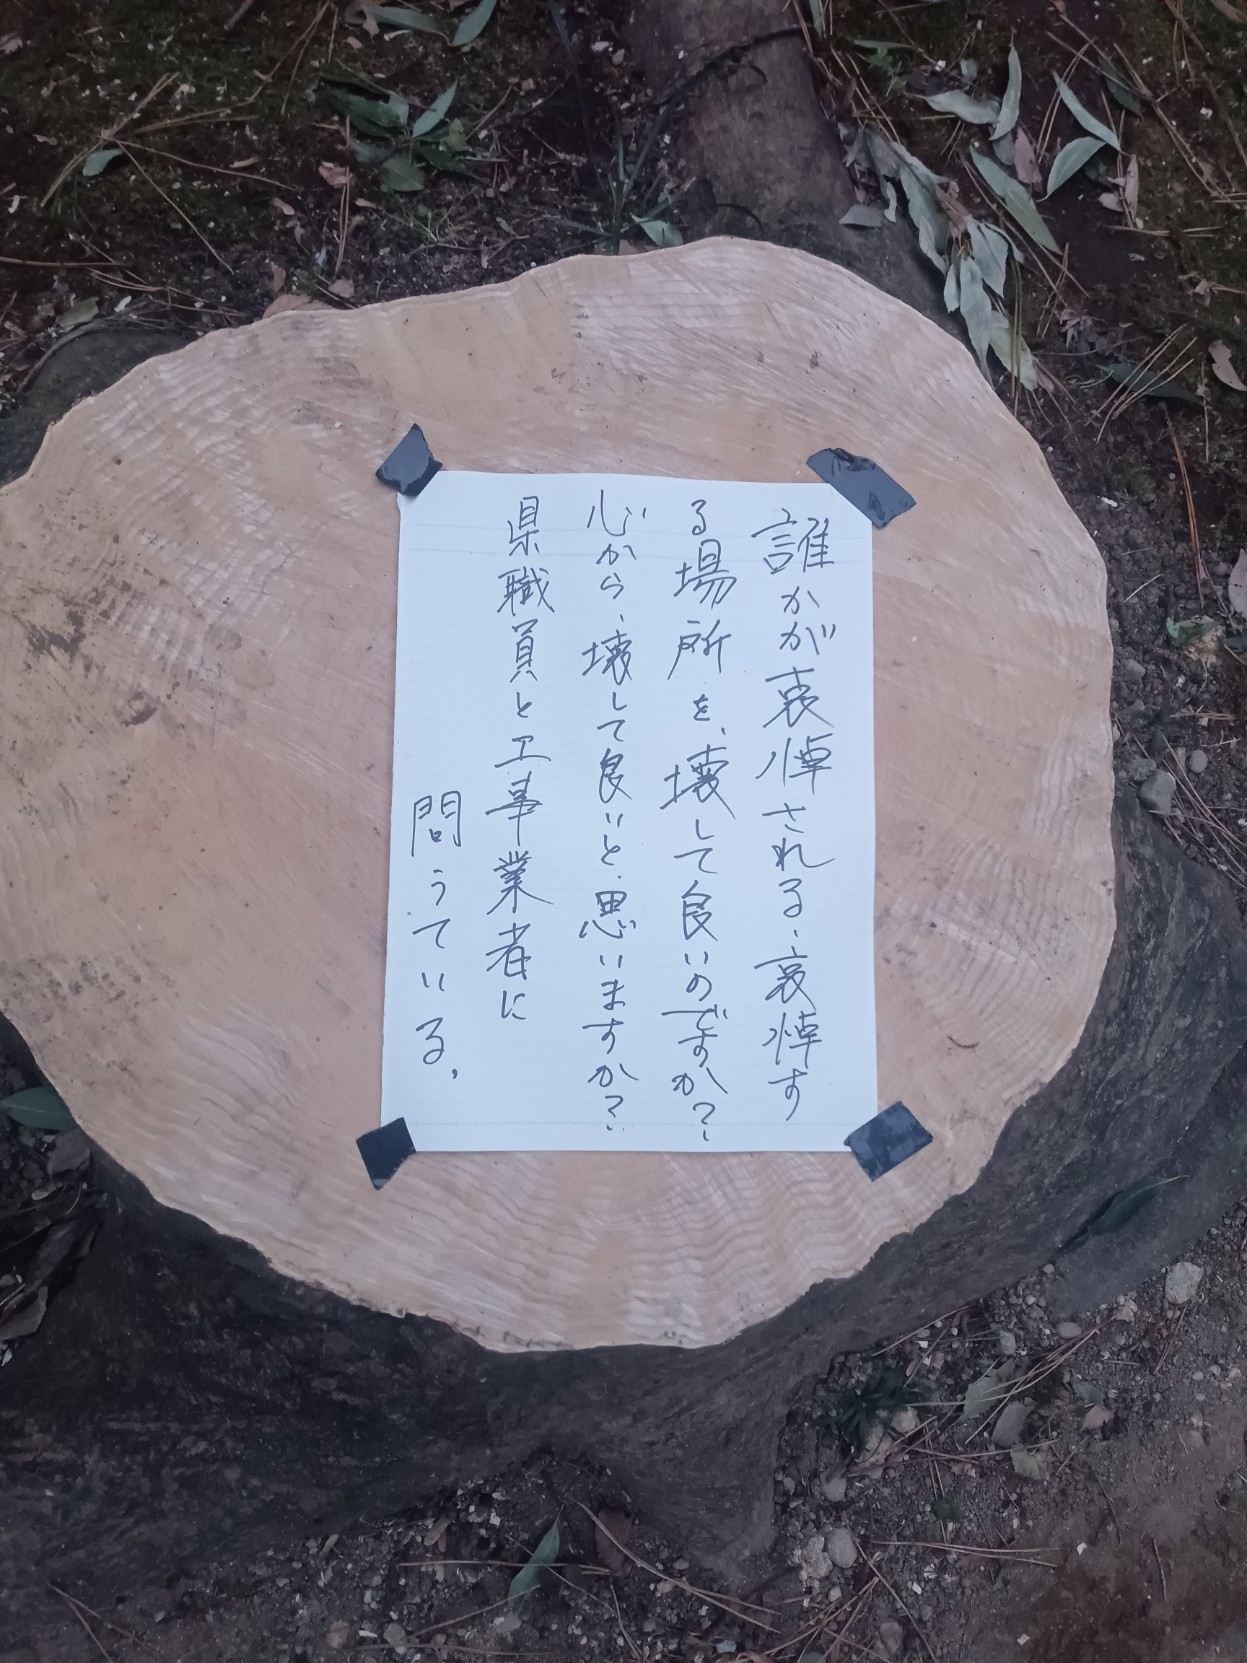 撤去工事のために切り倒された木の切り株に張り紙メッセージ。『誰かが哀悼される、哀悼する場所を壊して良いのですか？心から、壊して良いと思いますか？県職員と工事業者に問うている』